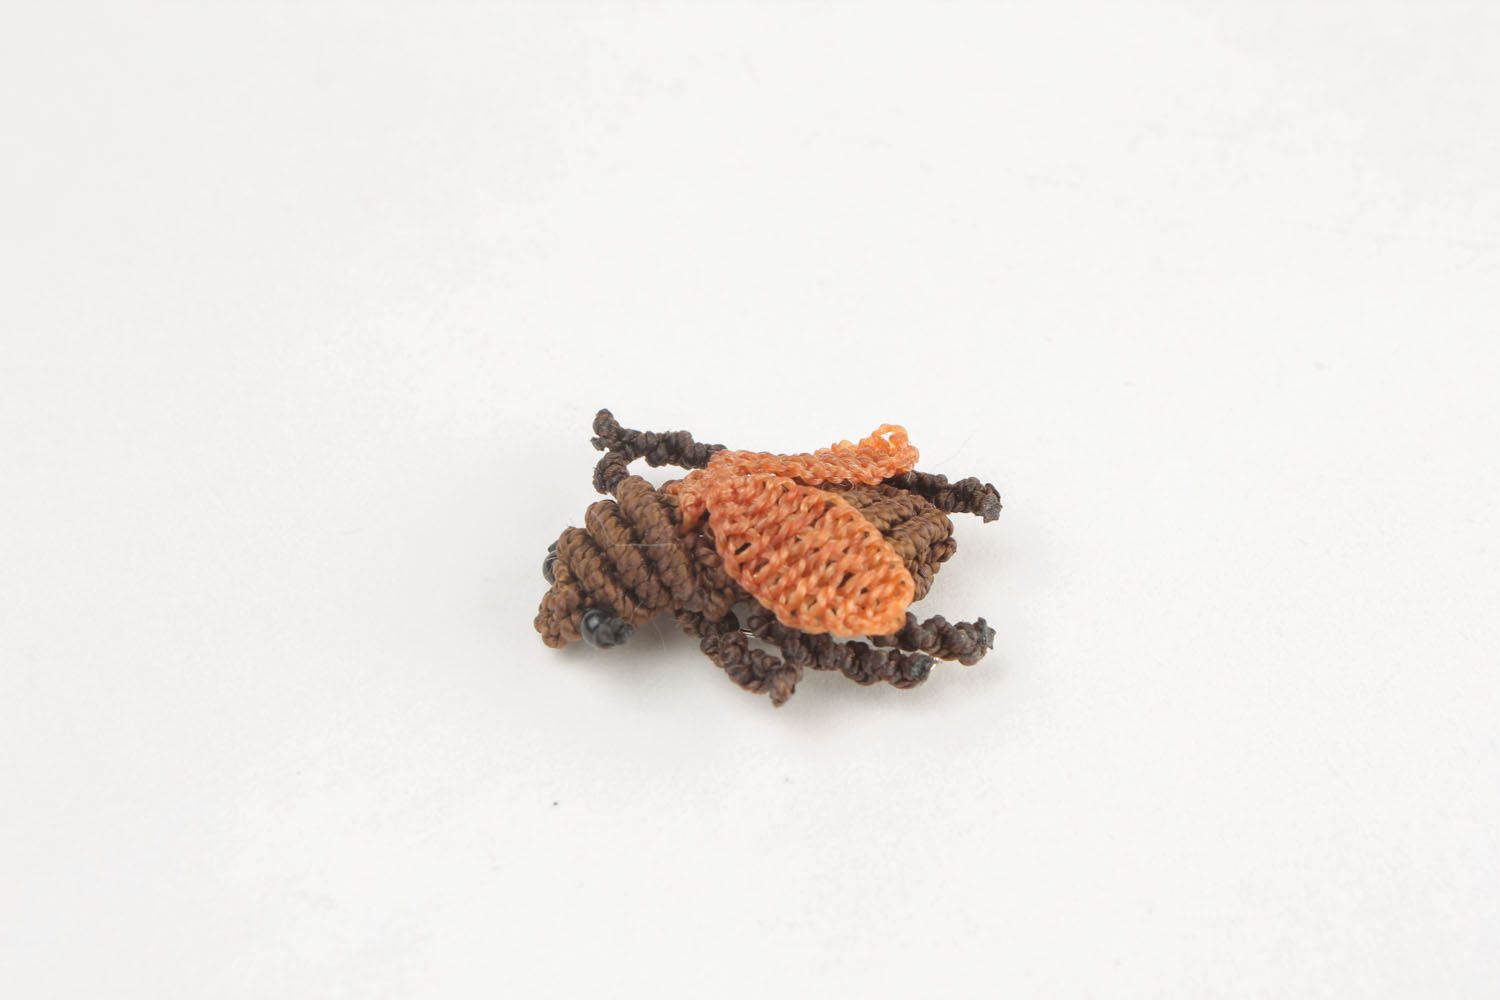 Broche na forma de um inseto foto 9